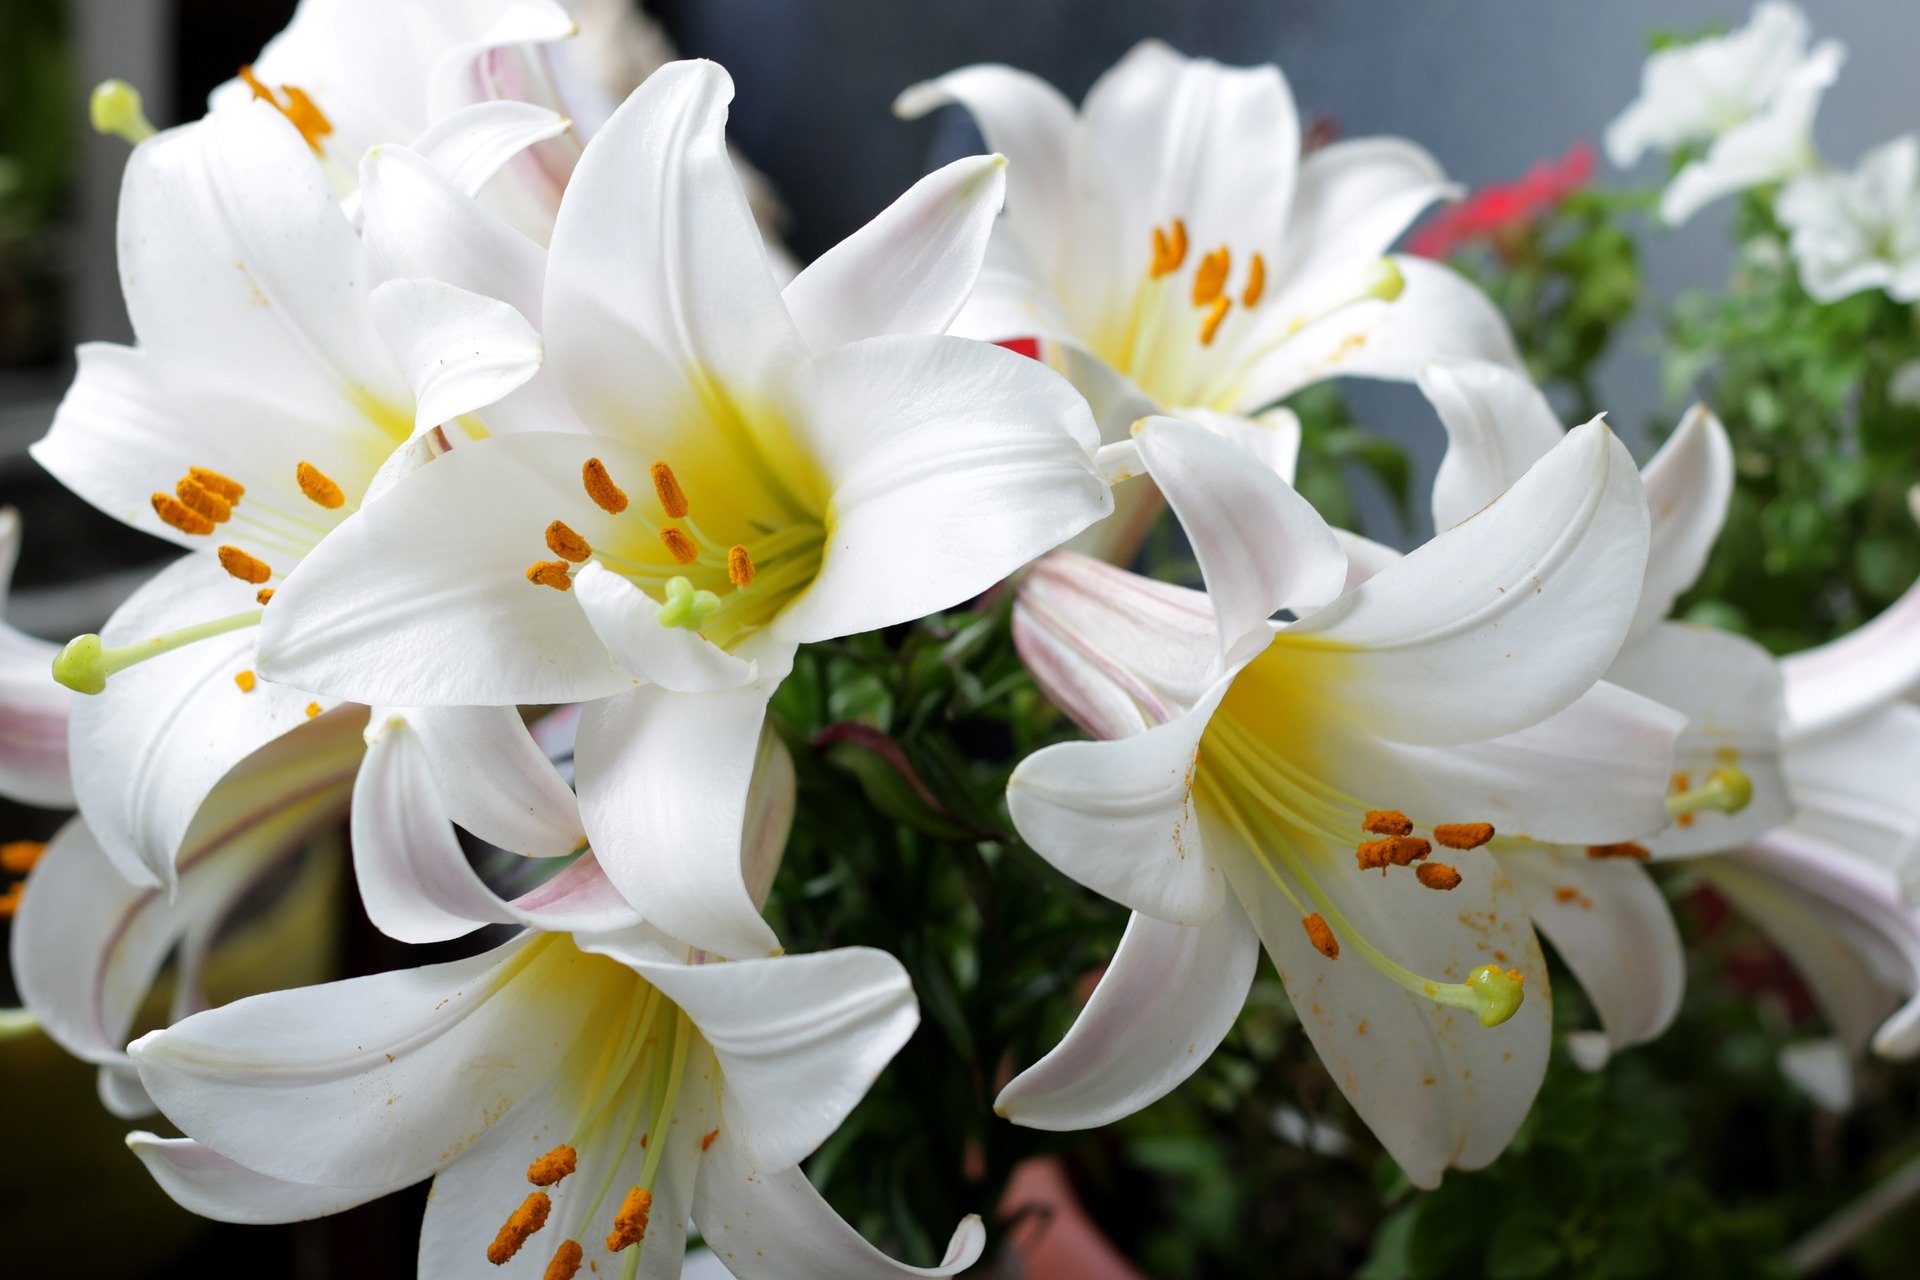 Der Fremde hat Aidens Blumenstrauß aus weißen Lilien bezahlt. | Quelle: Pixabay